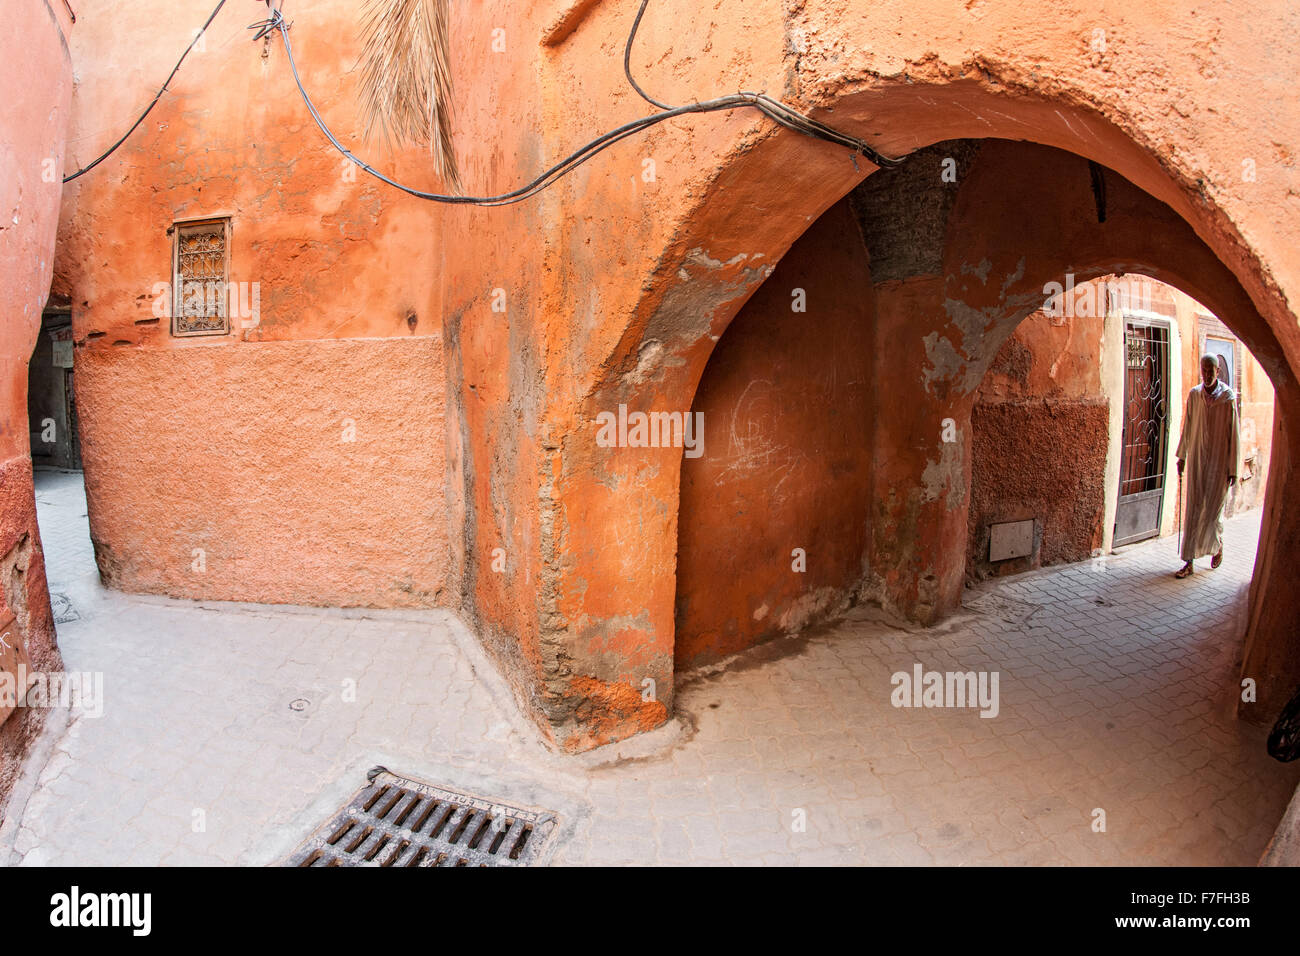 Las callejuelas de la ciudad vieja de la medina de Marrakech, Marruecos. Foto de stock